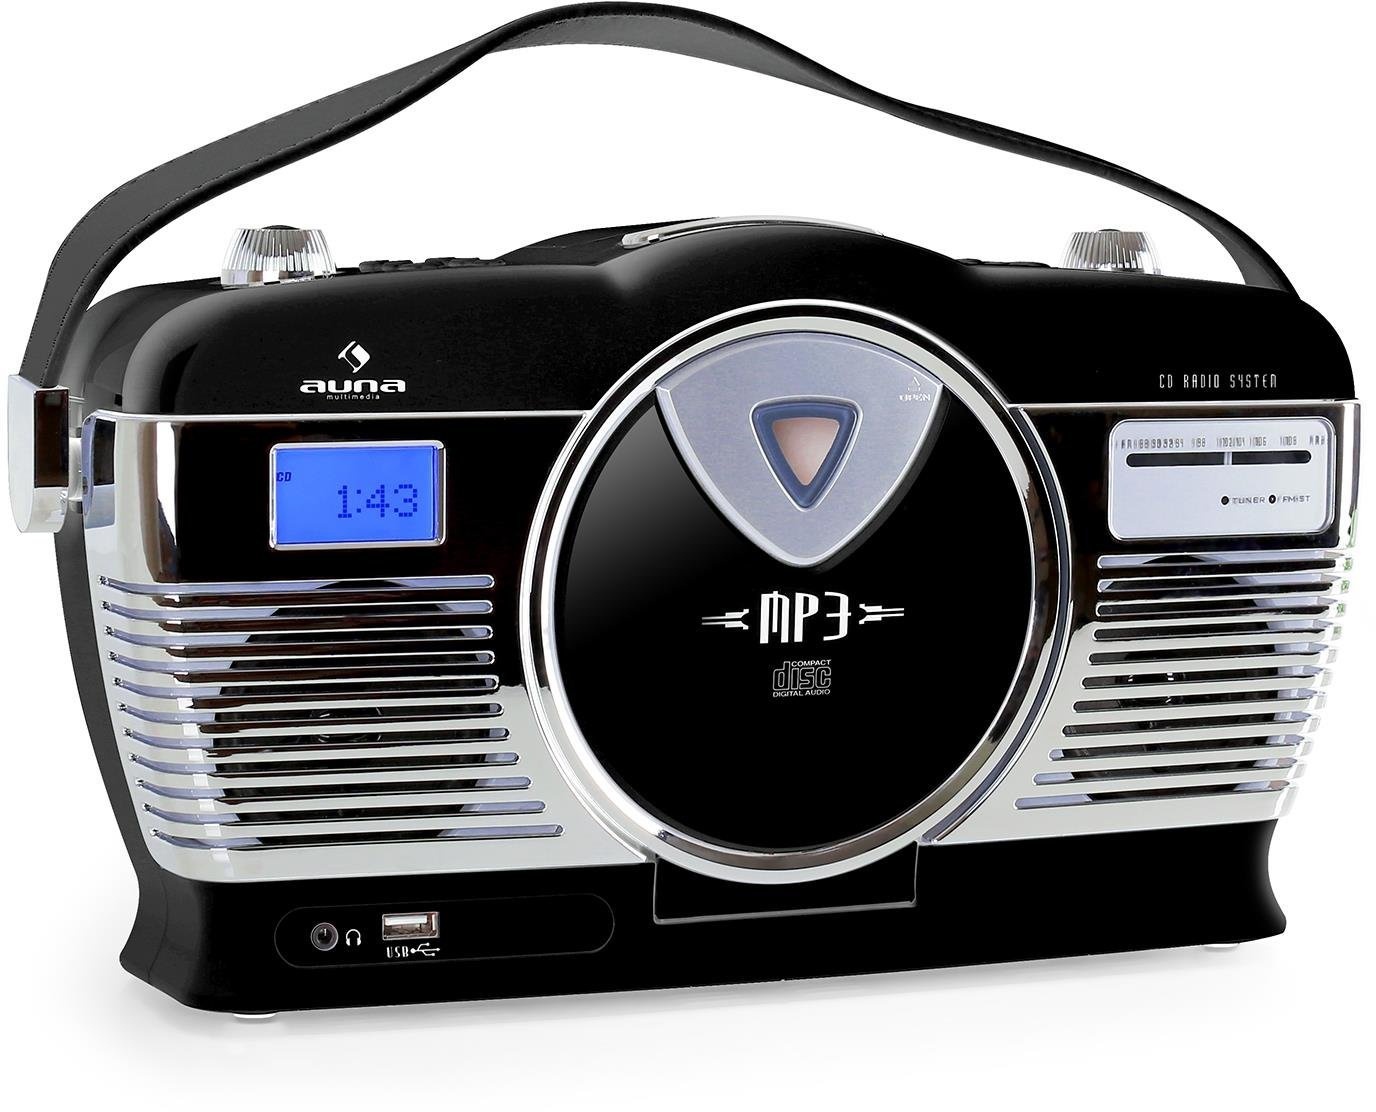 auna RCD-70 Retro CD-Radio Nostalgie Radio (UKW Radio, MP3-fähiger USB-Port, frontlader CD- / MP3-Player, programmierbare Wiedergabe, Zufallswiedergabe, Netz- / Batterie-Betrieb, Tragegriff) schwarz